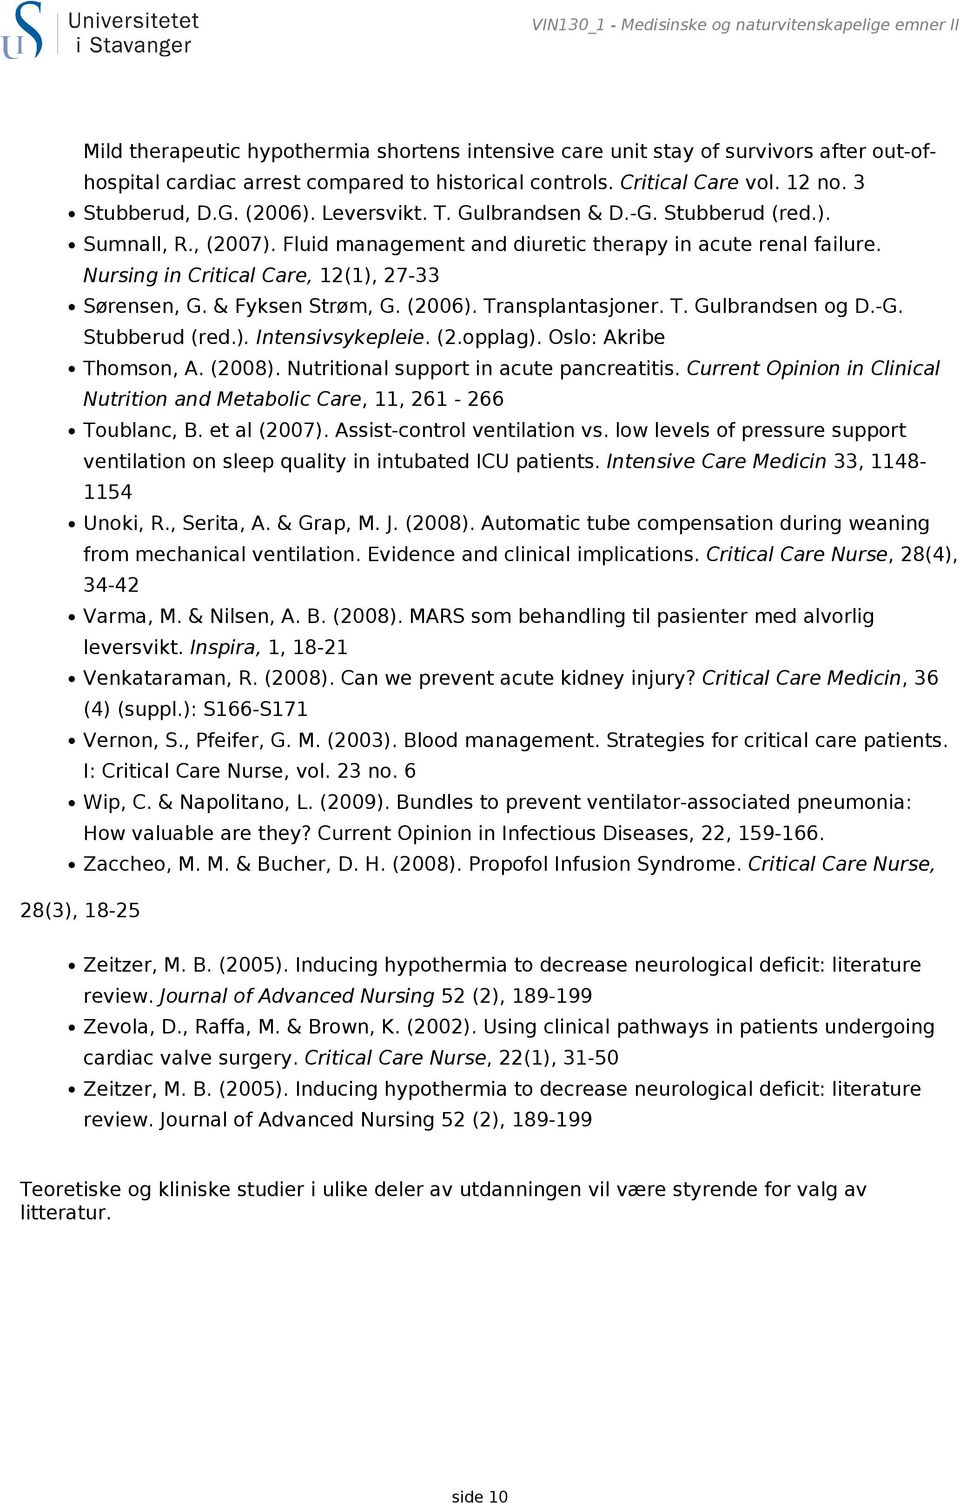 Nursing in Critical Care, 12(1), 27-33 Sørensen, G. & Fyksen Strøm, G. (2006). Transplantasjoner. T. Gulbrandsen og D.-G. Stubberud (red.). Intensivsykepleie. (2.opplag). Oslo: Akribe Thomson, A.